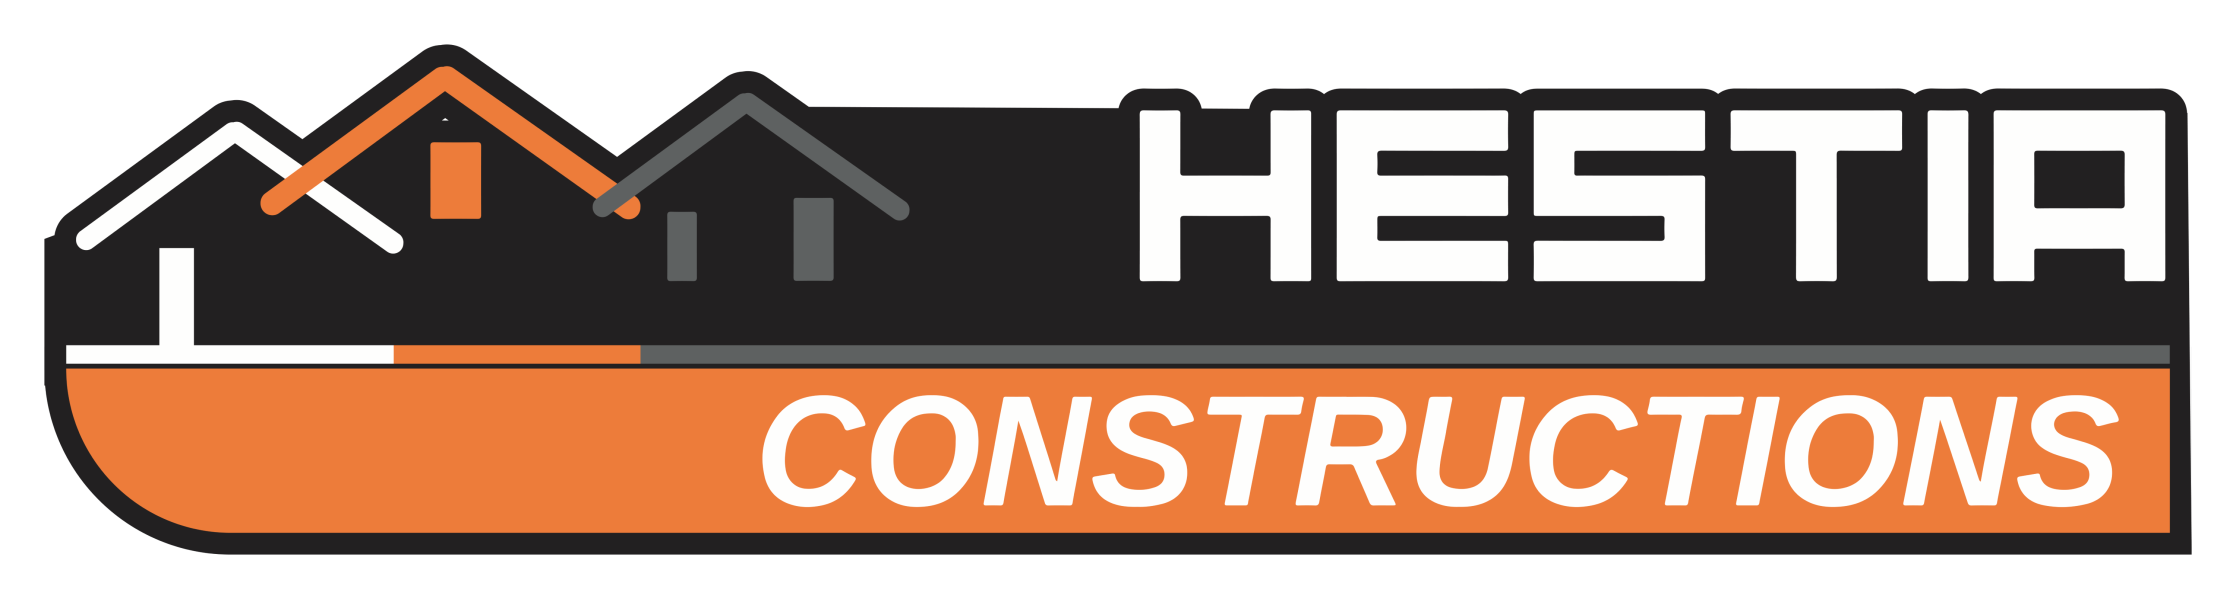 HESTIA CONSTRUCTIONS - Avant-projet de la semaine chez Hestia